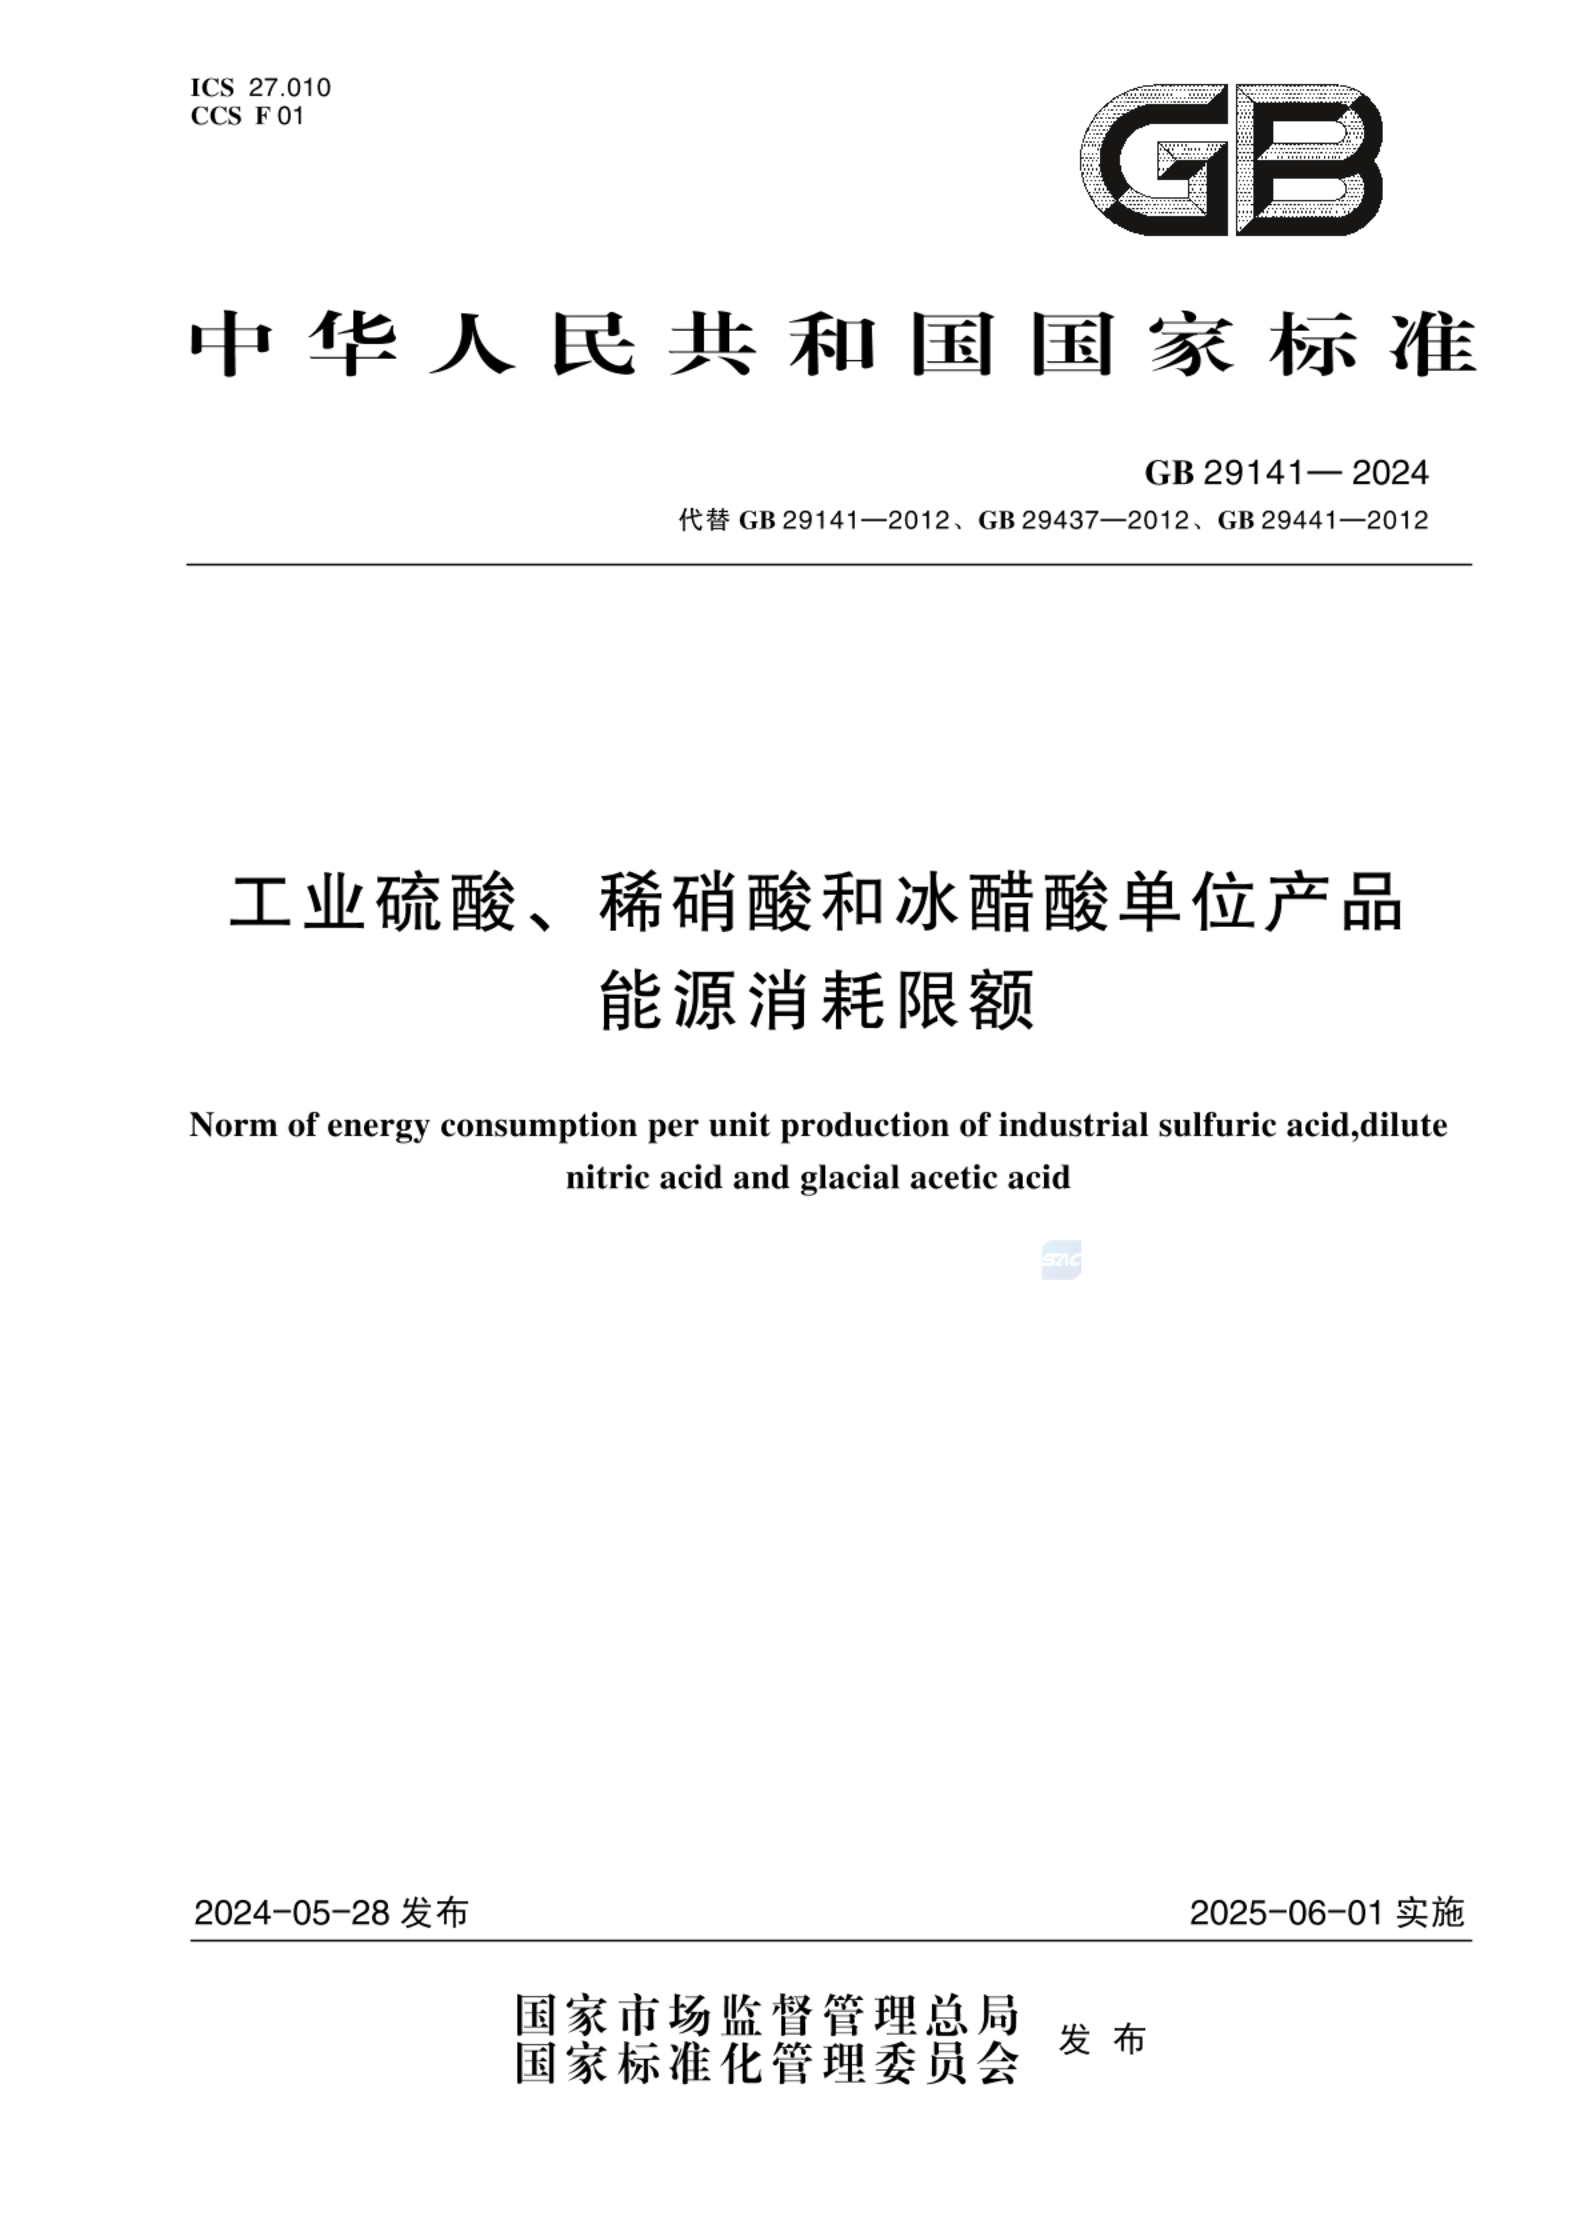 GB 29141-2024工业硫酸、稀硝酸和冰醋酸单位产品能源消耗限额